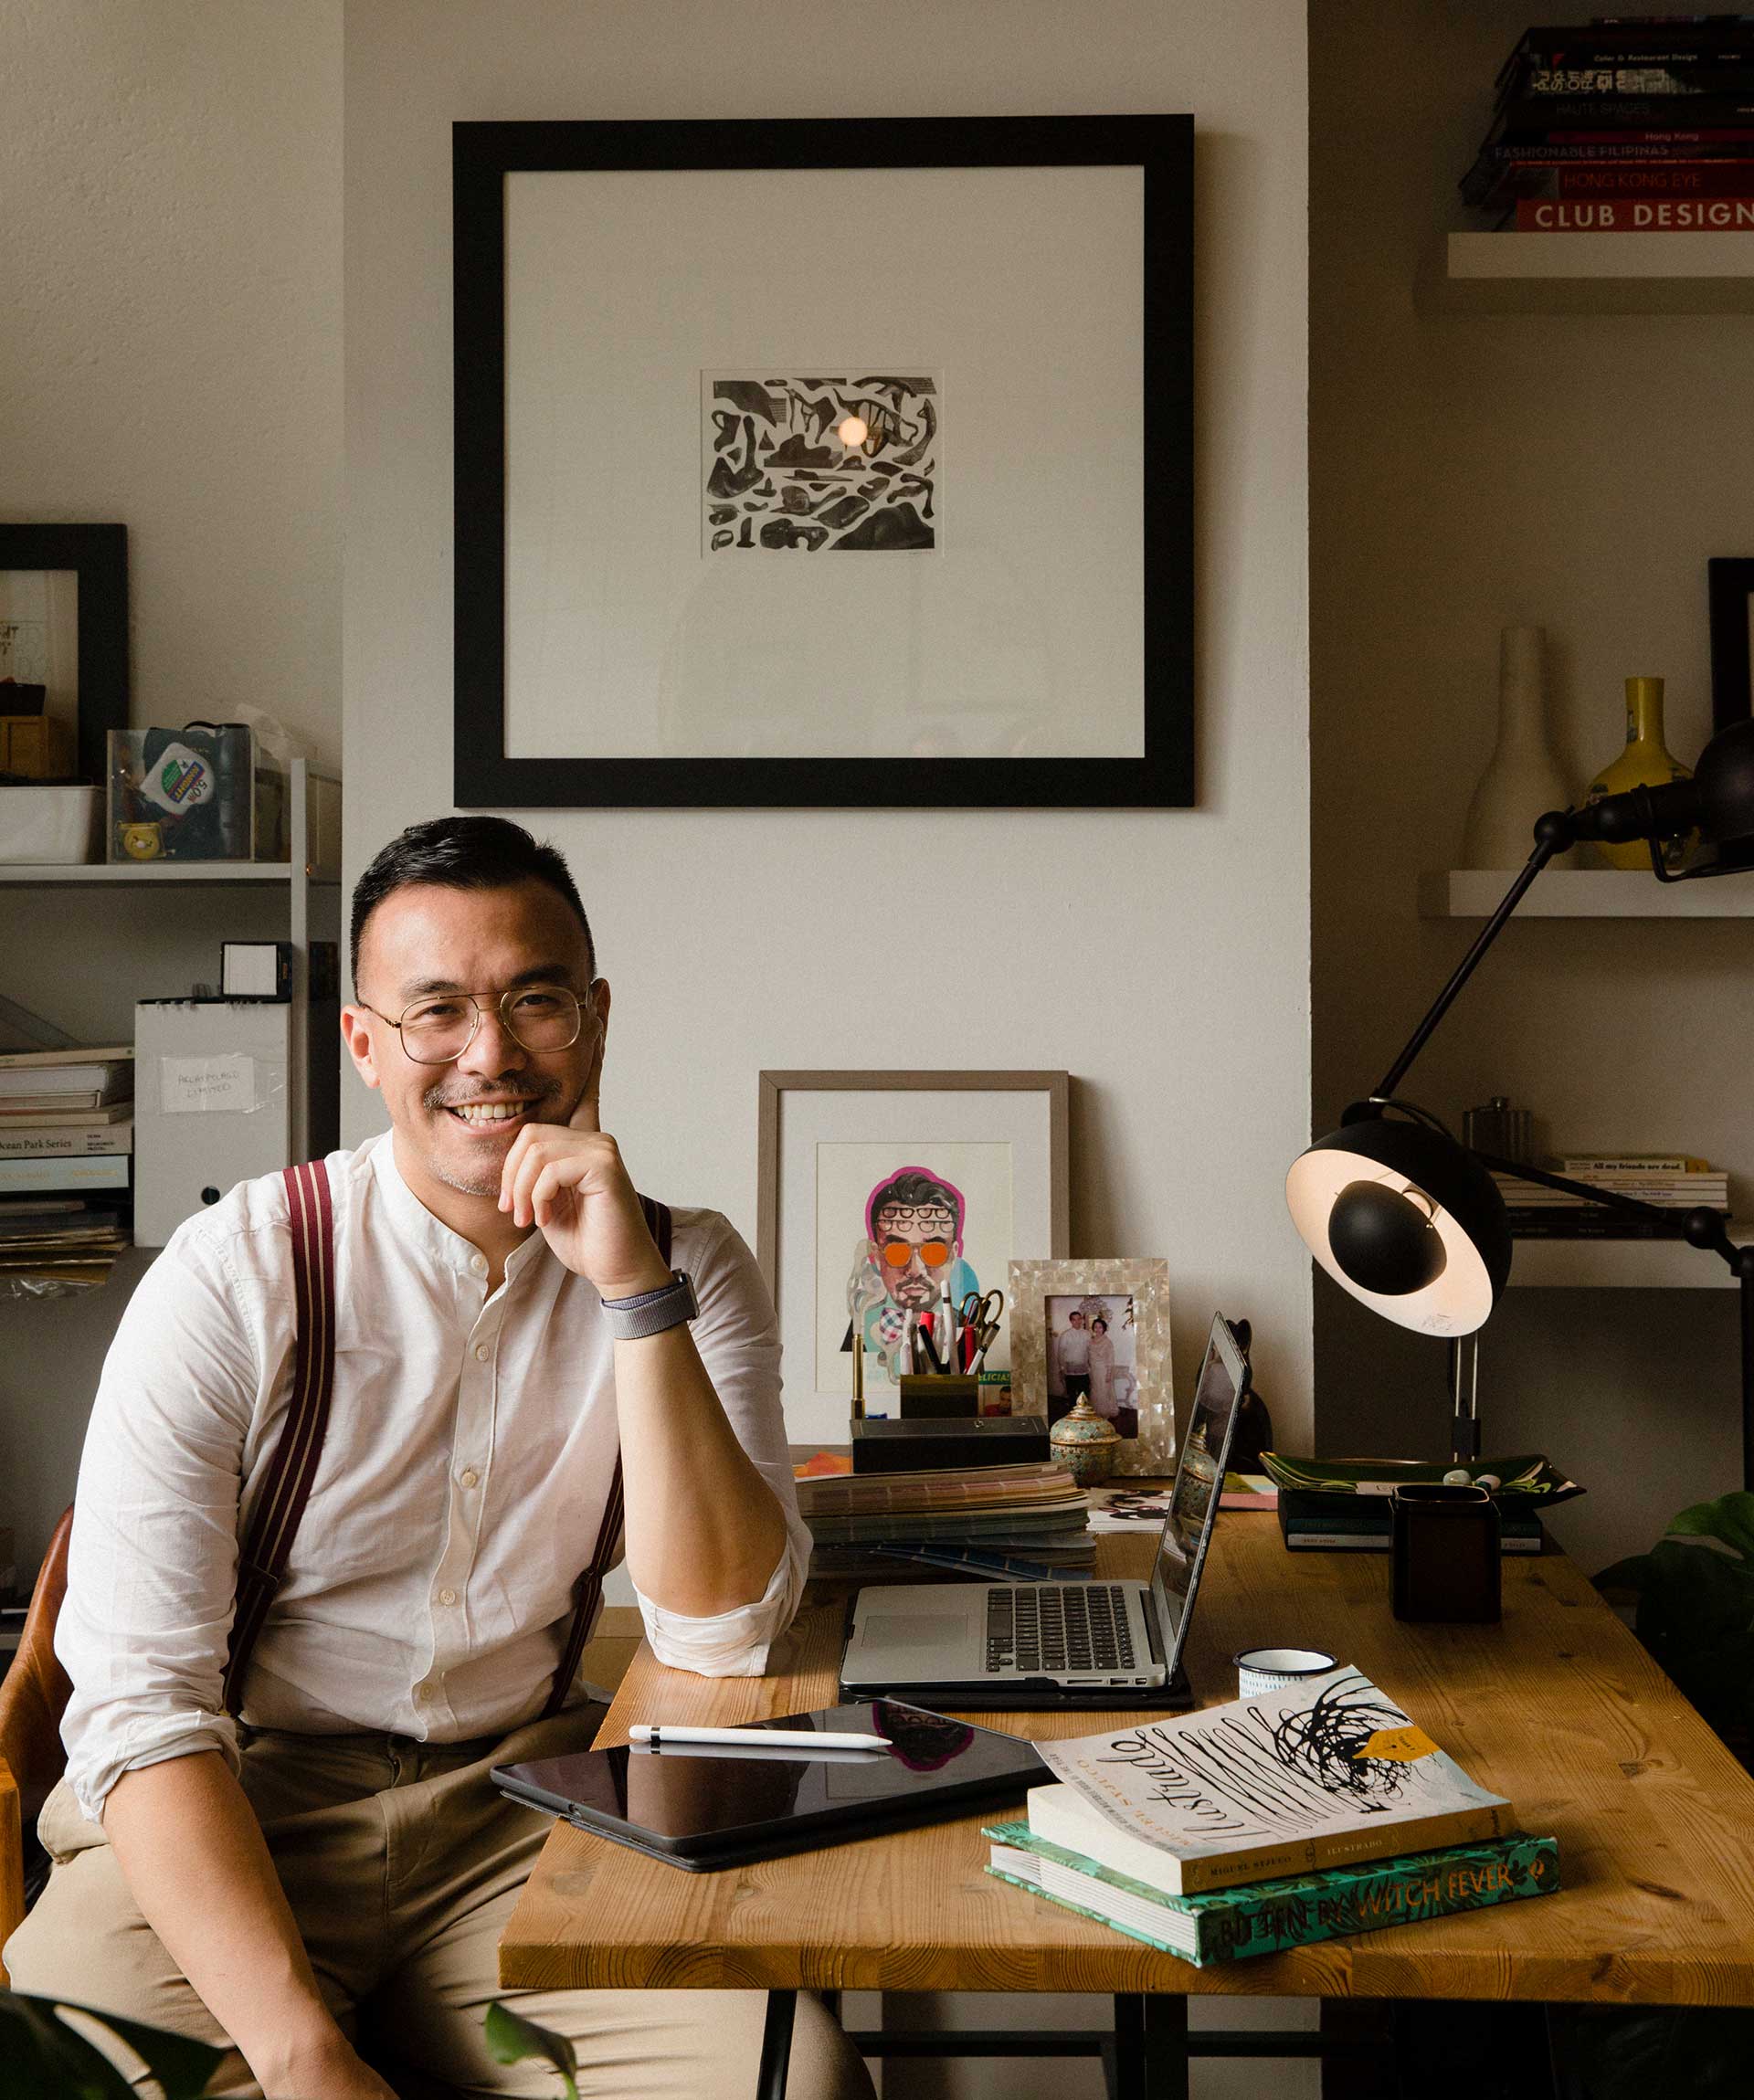 香港設計師兼網誌作家JJ.Acuna在他的住宅連工作室中留影。枱燈由&tradition提供